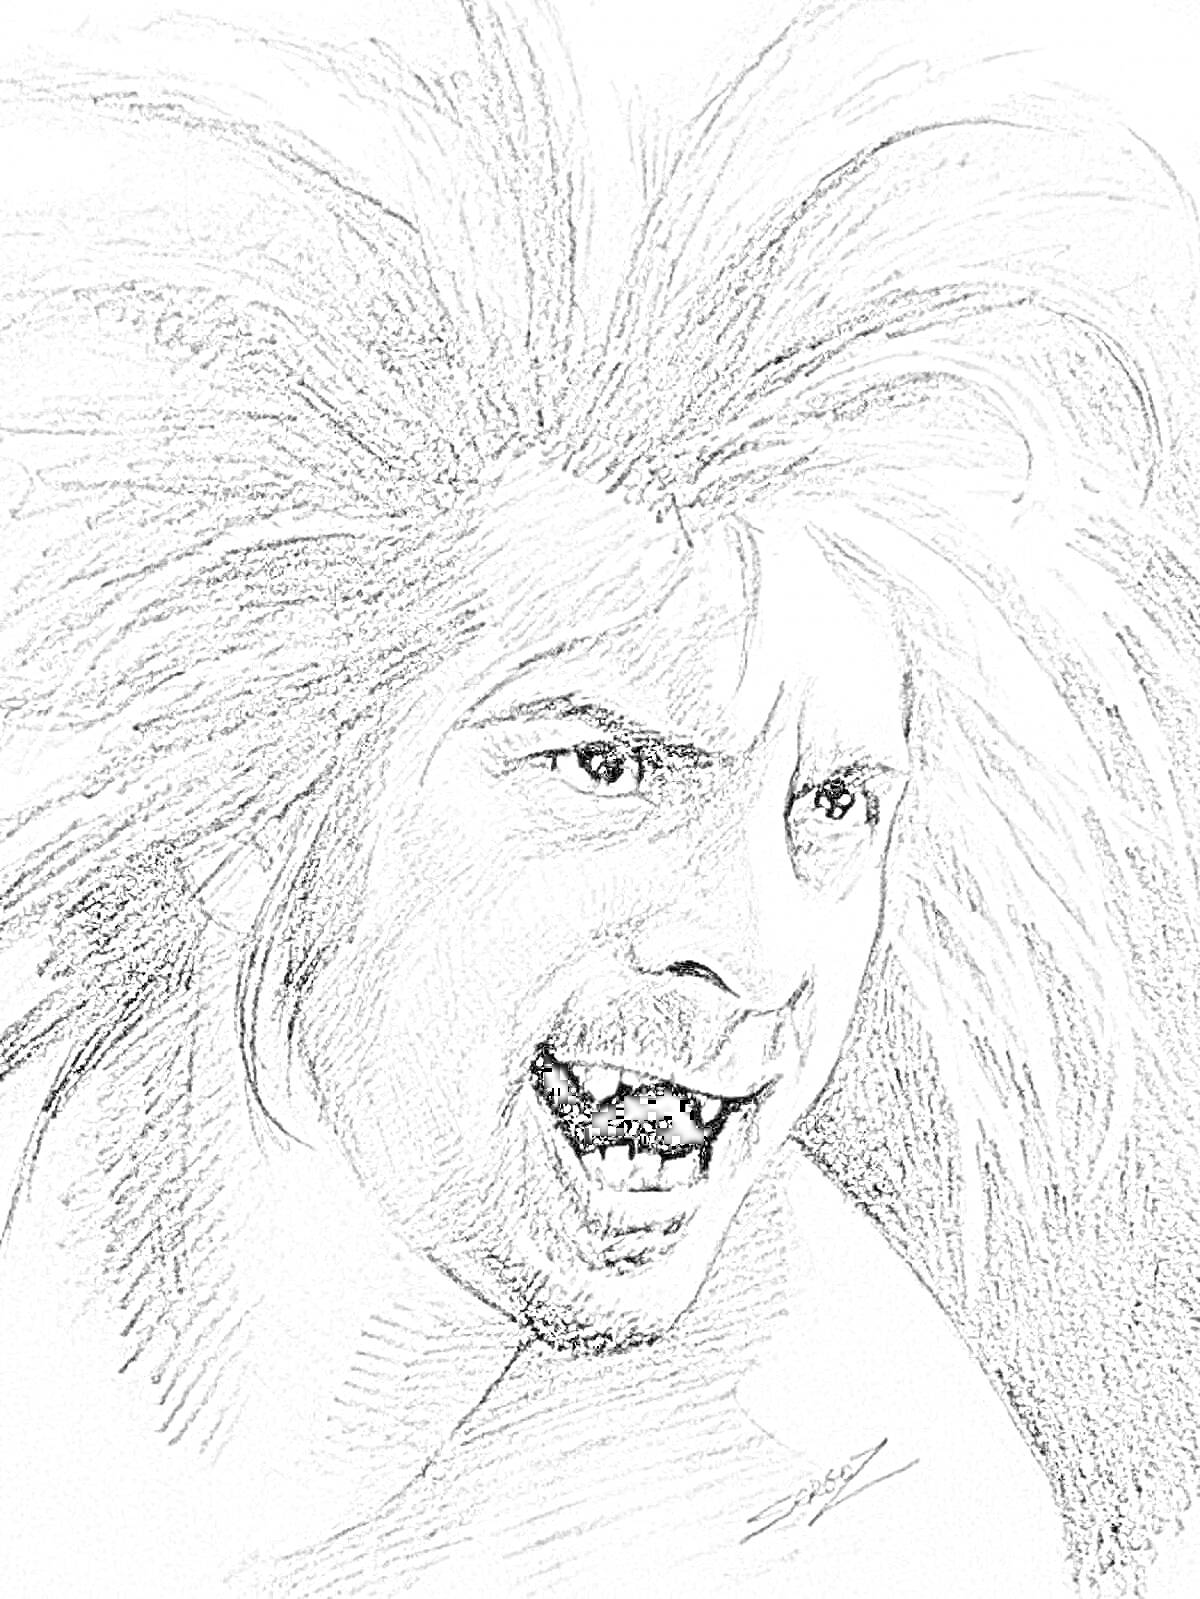 Раскраска Раскраска с изображением мужчины с диким выражением лица, растрепанными волосами и открытым ртом с видимыми клыками